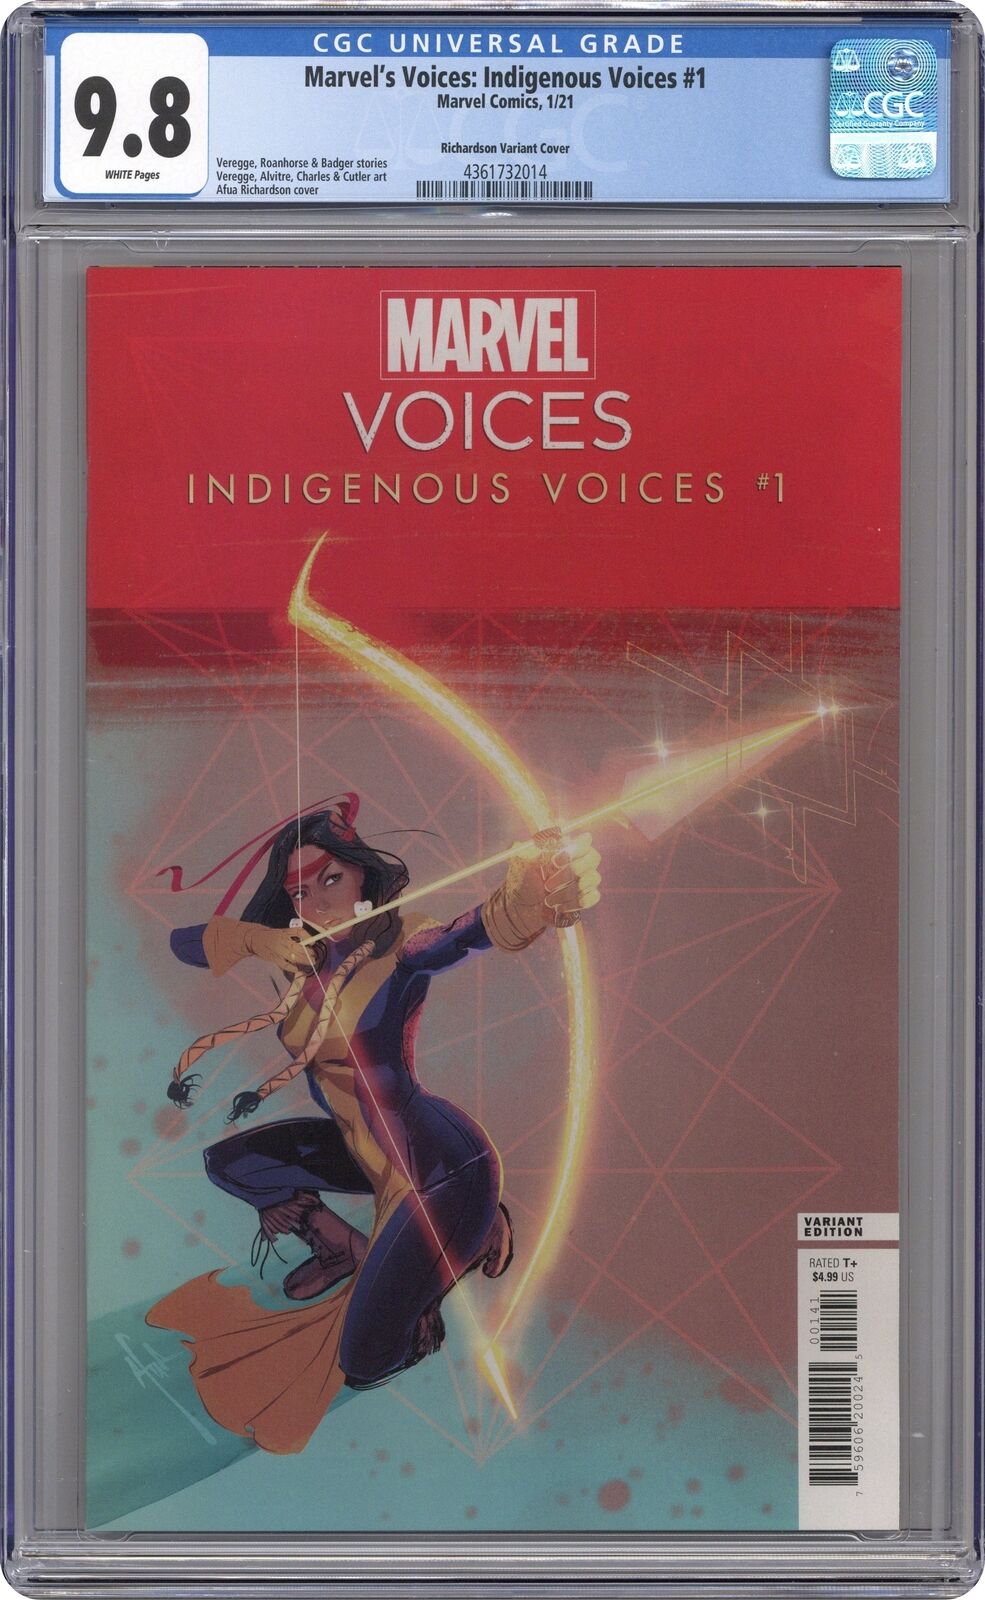 Marvel\'s Voices Indigenous Voices 1D Richardson Variant CGC 9.8 2021 4361732014